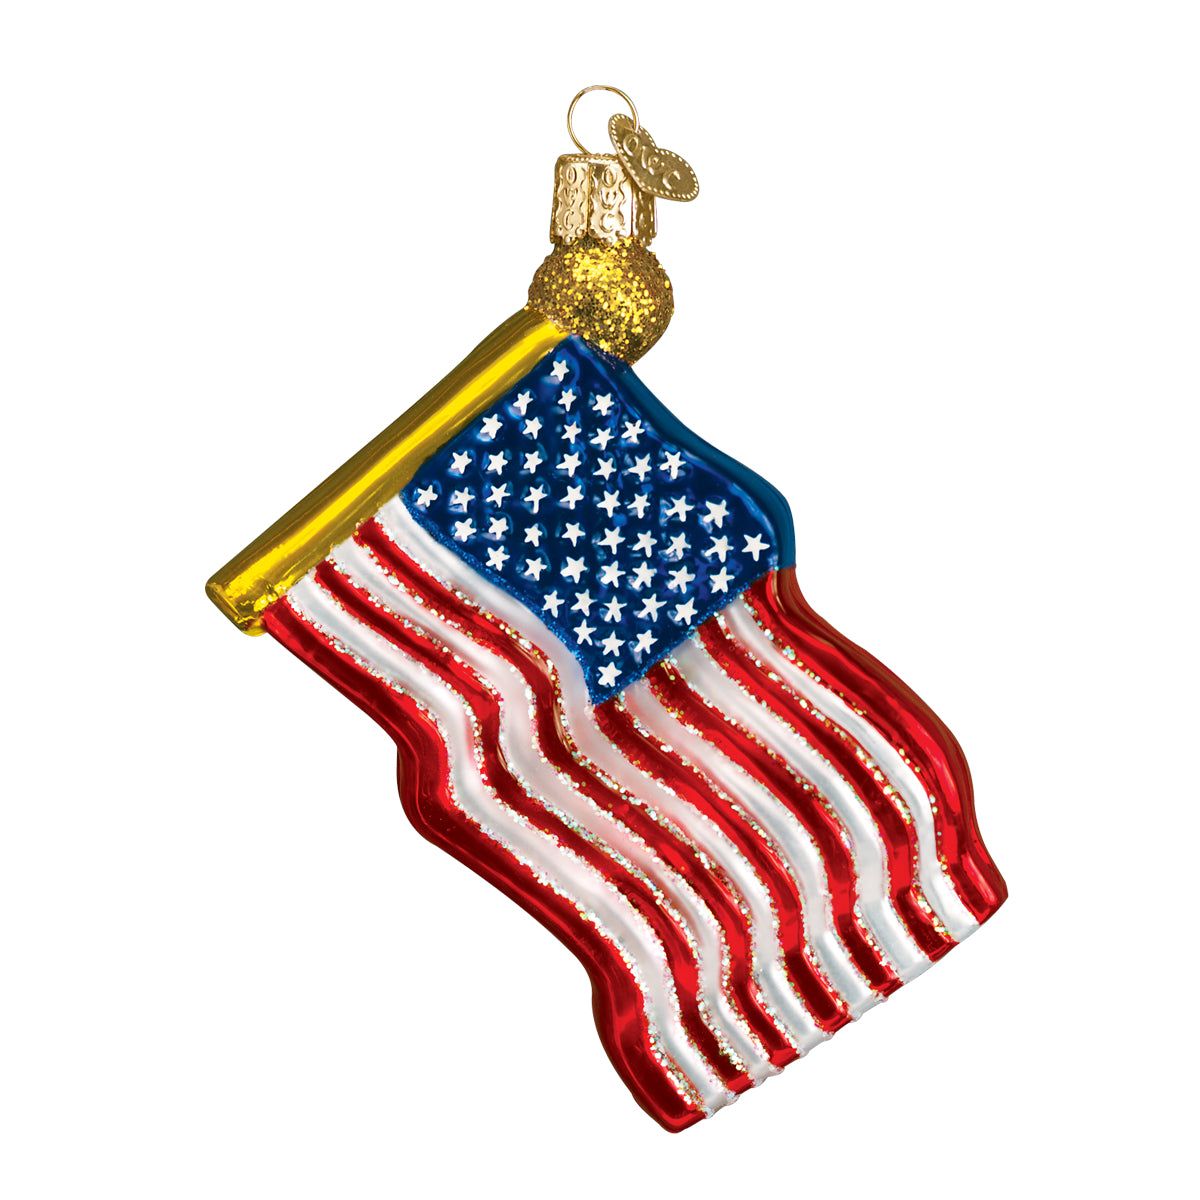 Star-spangled Banner Ornament